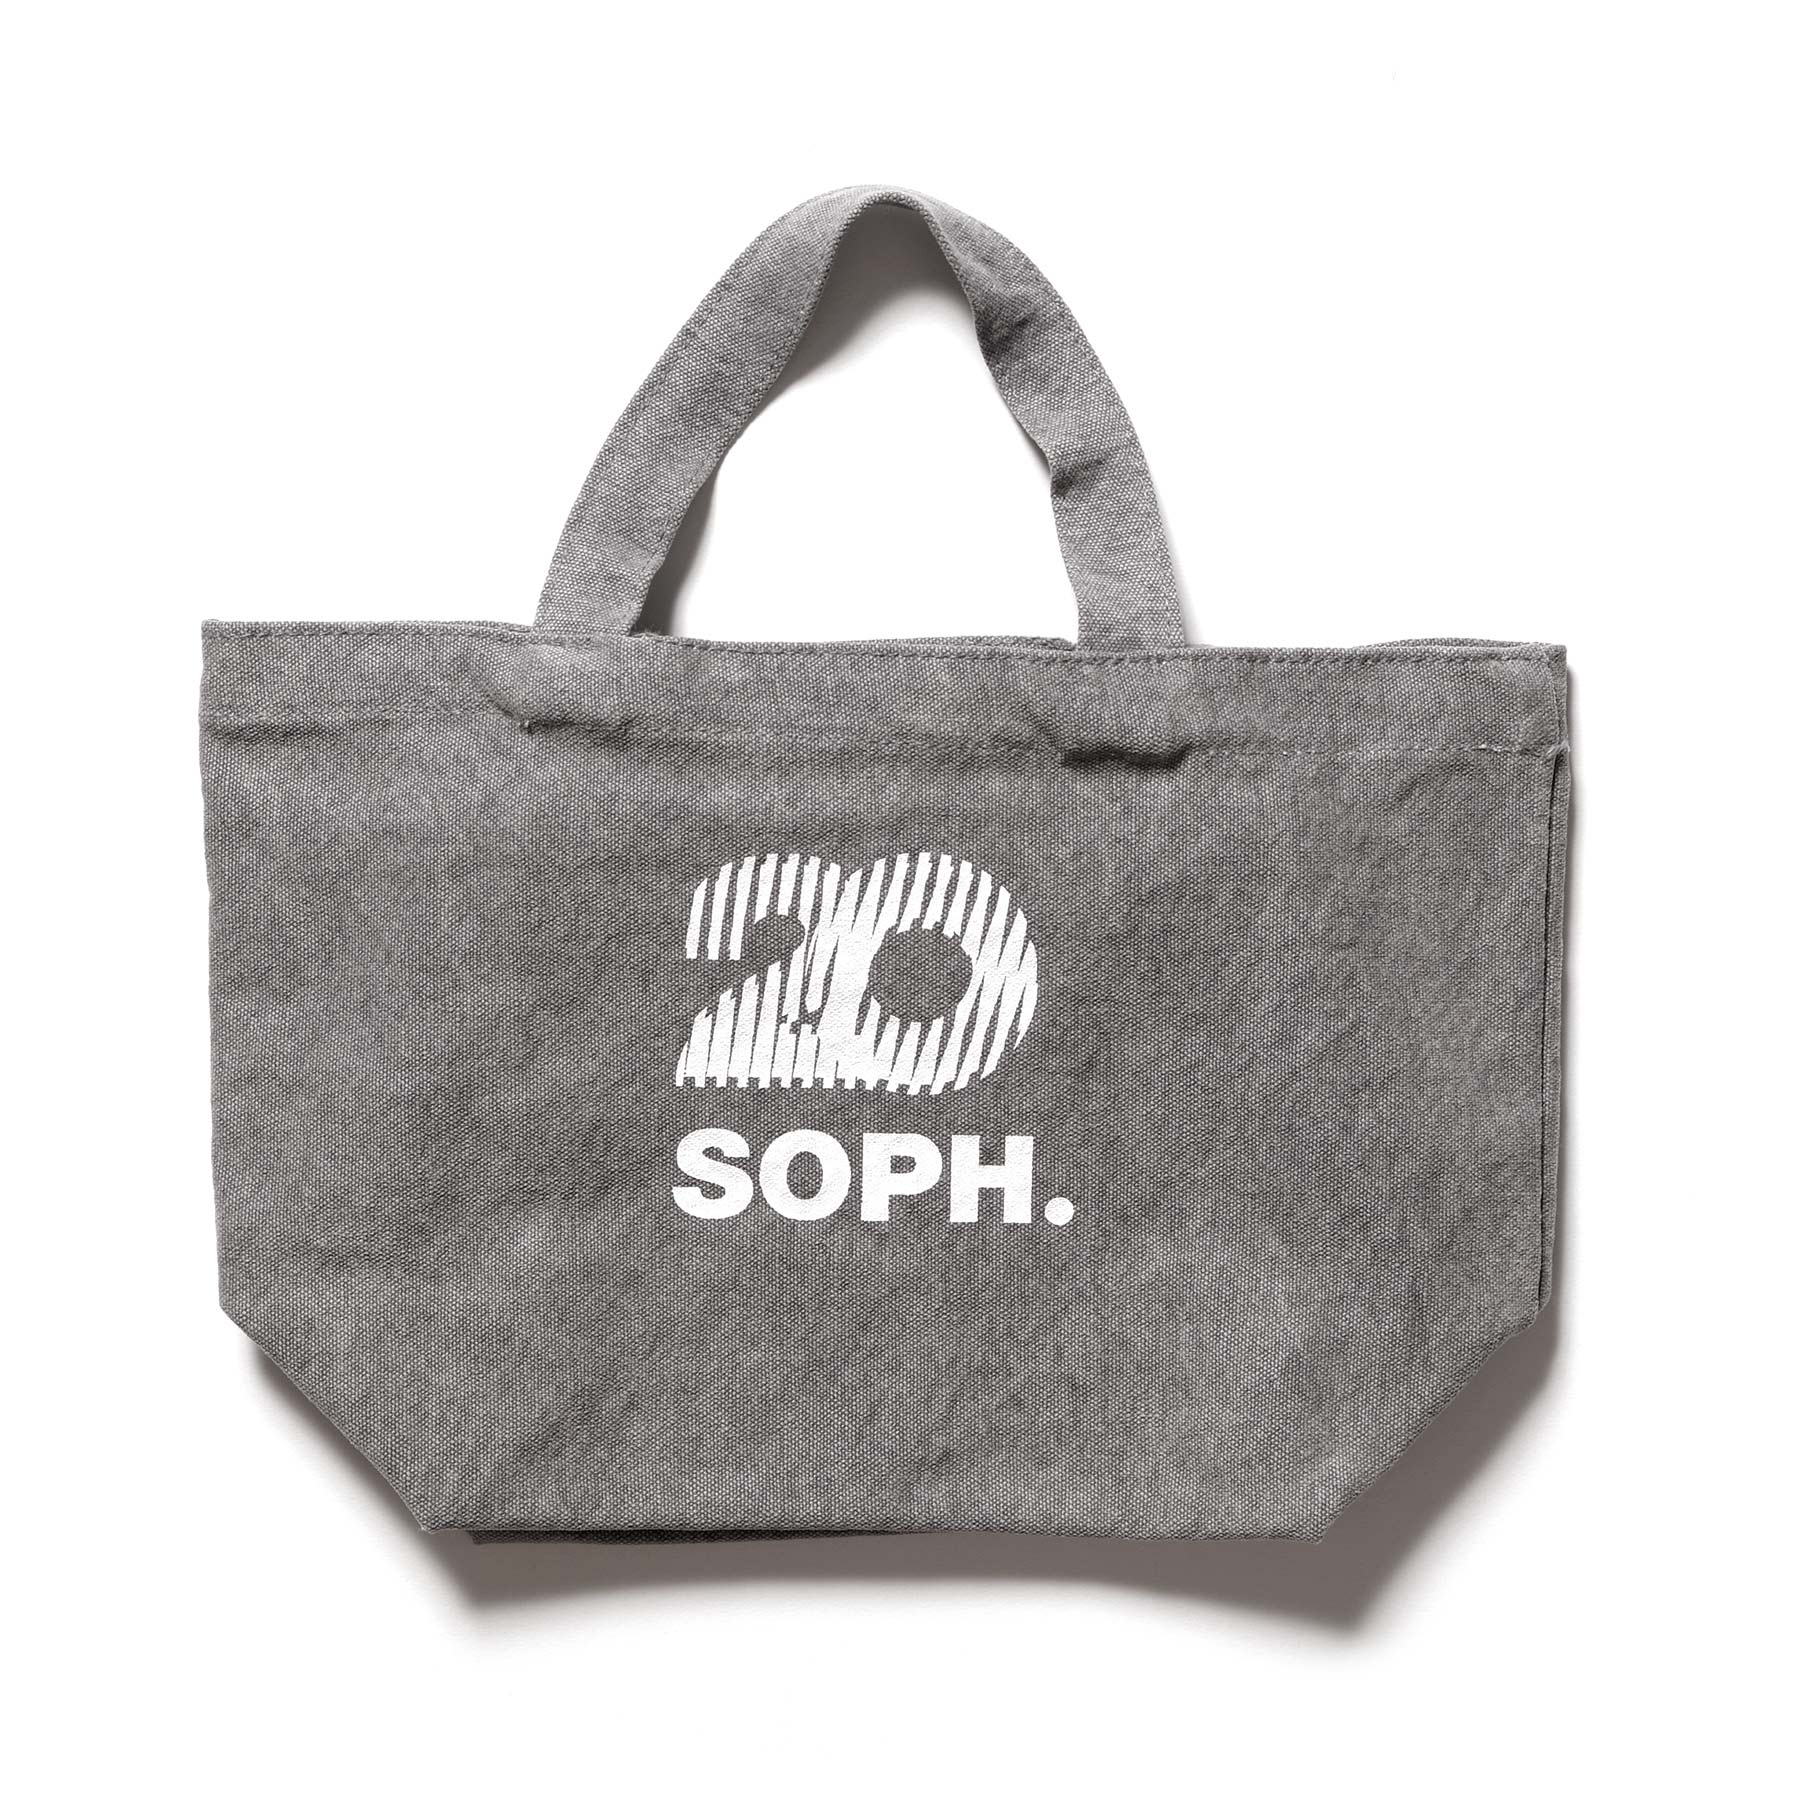 SOPH.の20周年を祝した新ブランド、SOPH.20が始動